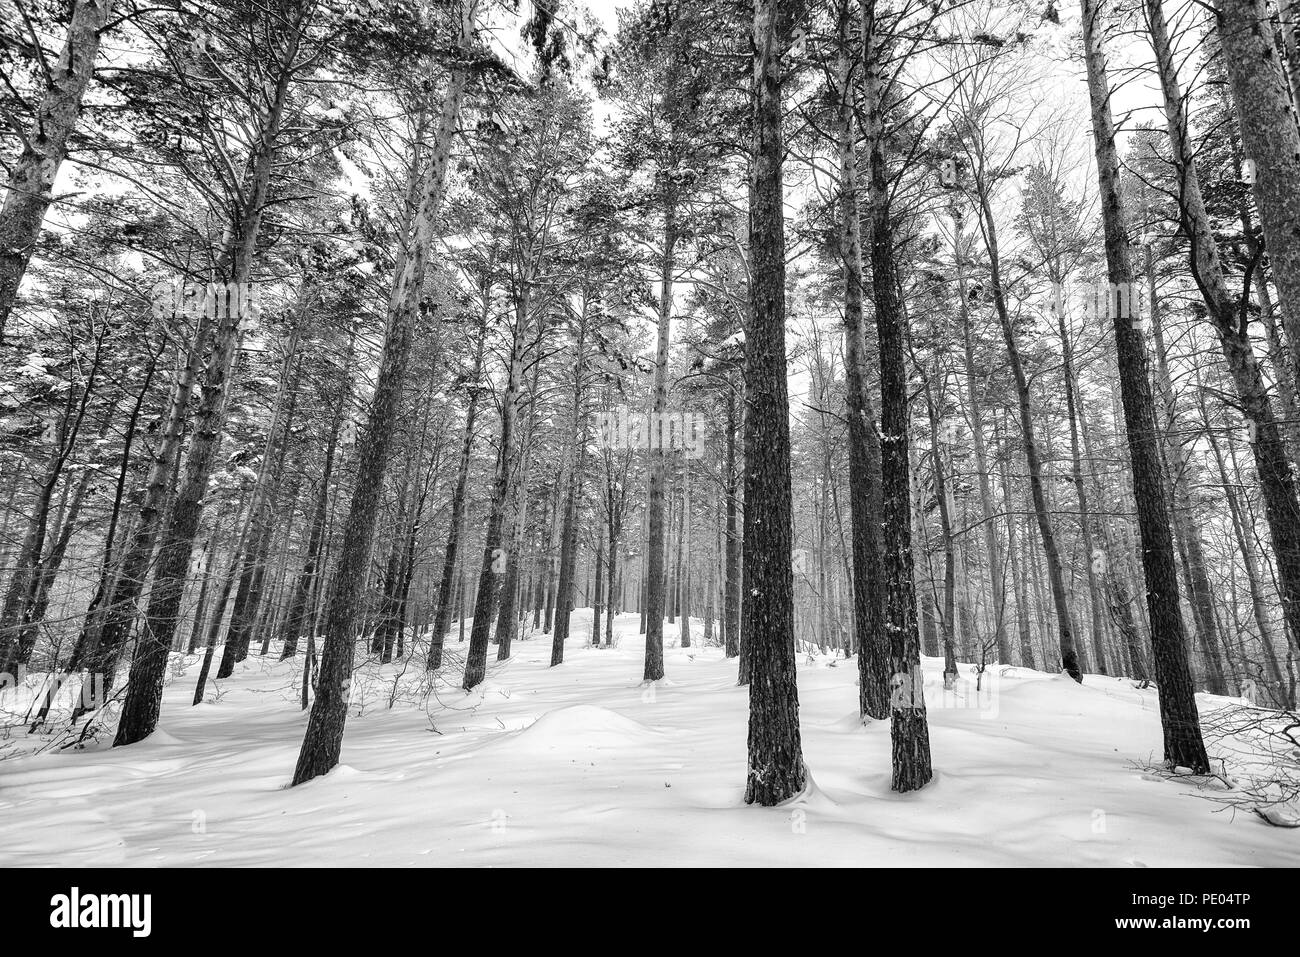 Schnee bedeckt Bäume im Winter Wald. Winter Wald mit Bäumen. Schwarz-Weiß-Bild Stockfoto